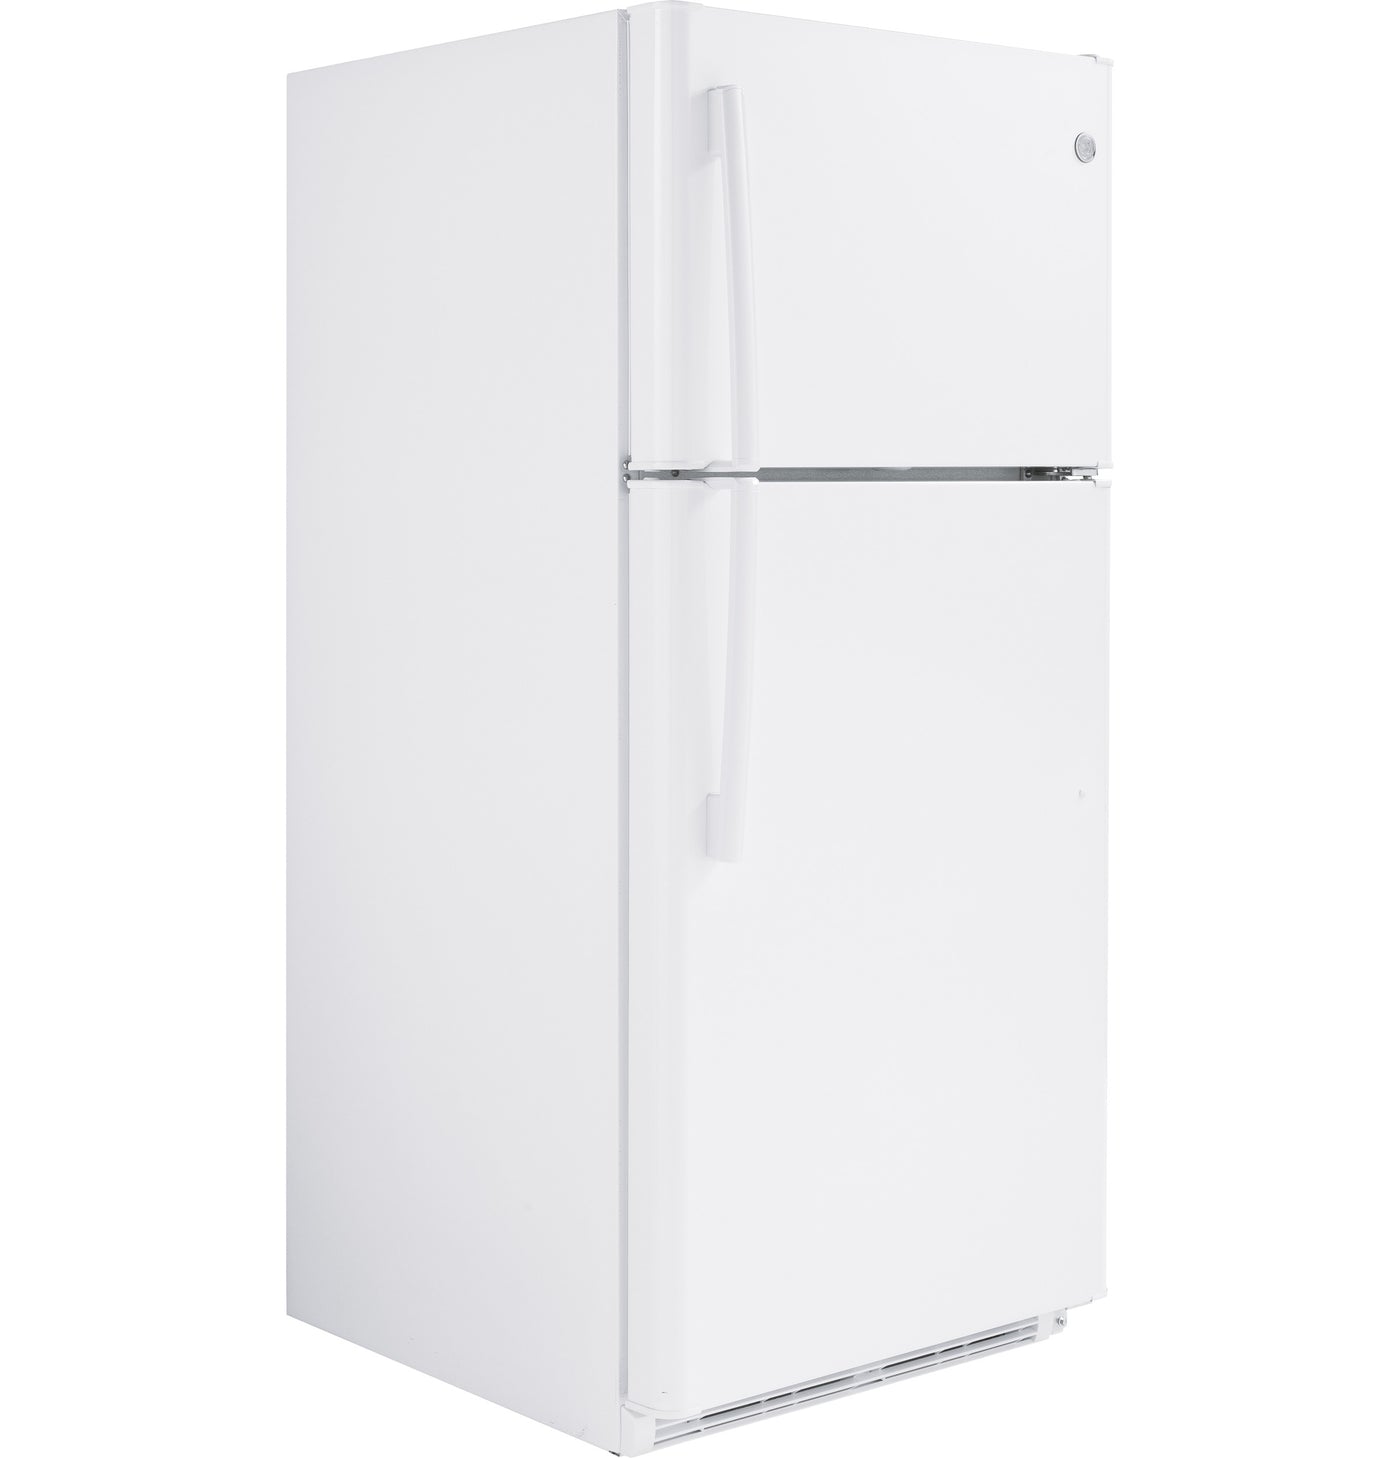 Купить холодильник дэу. Холодильник Дэу с верхней морозильной камерой. Холодильник Дэу с верхней морозильной камерой широкий. Холодильник Daewoo 1998 года серебристый. Холодильник Корея Daewoo.